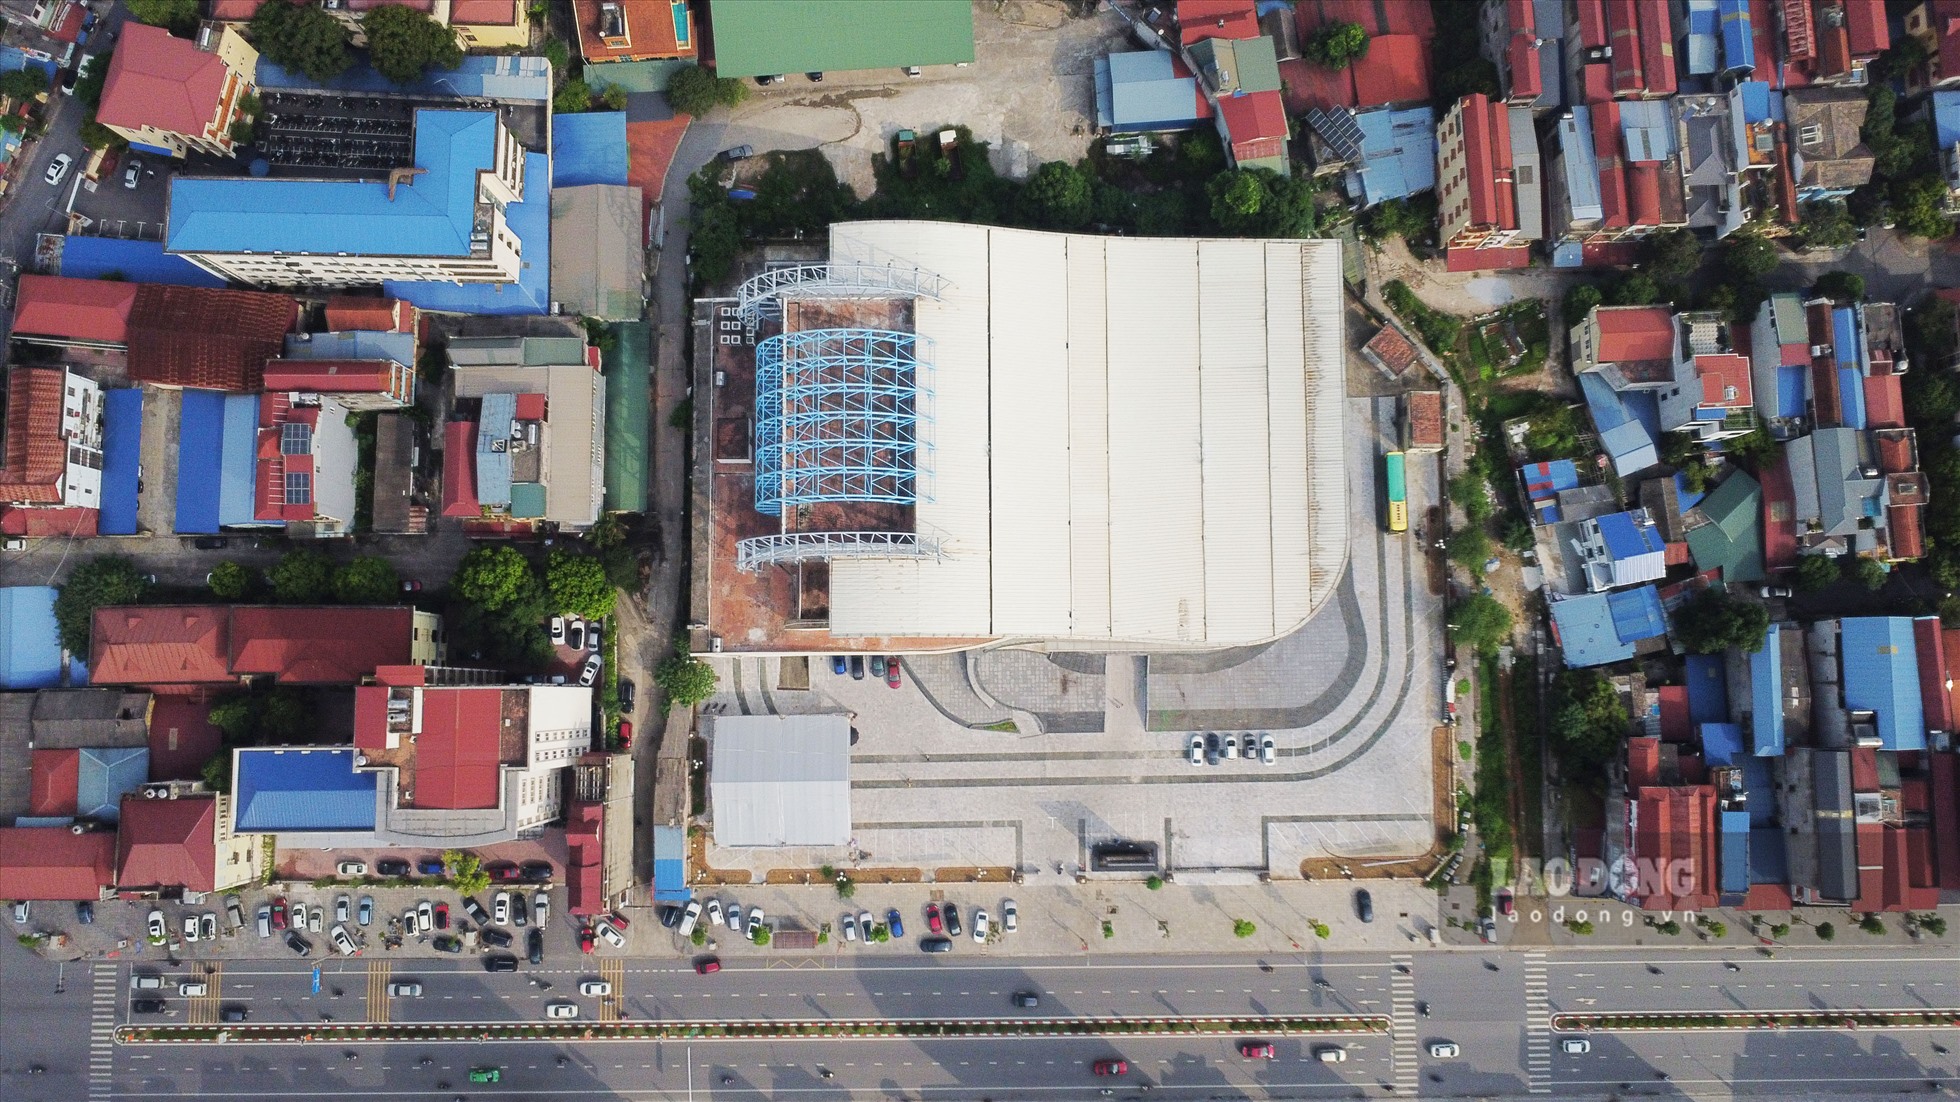 Nhà hát Ca múa nhạc dân gian Việt Bắc tại vị trí đặc địa trên con đường sầm uất Hoàng Văn Thụ (TP. Thái Nguyên). Công trình có tổng vốn đầu tư trên 319 tỷ đồng do Bộ Văn hóa Thể thao và Du lịch làm chủ đầu tư, khởi công xây dựng năm 2012.